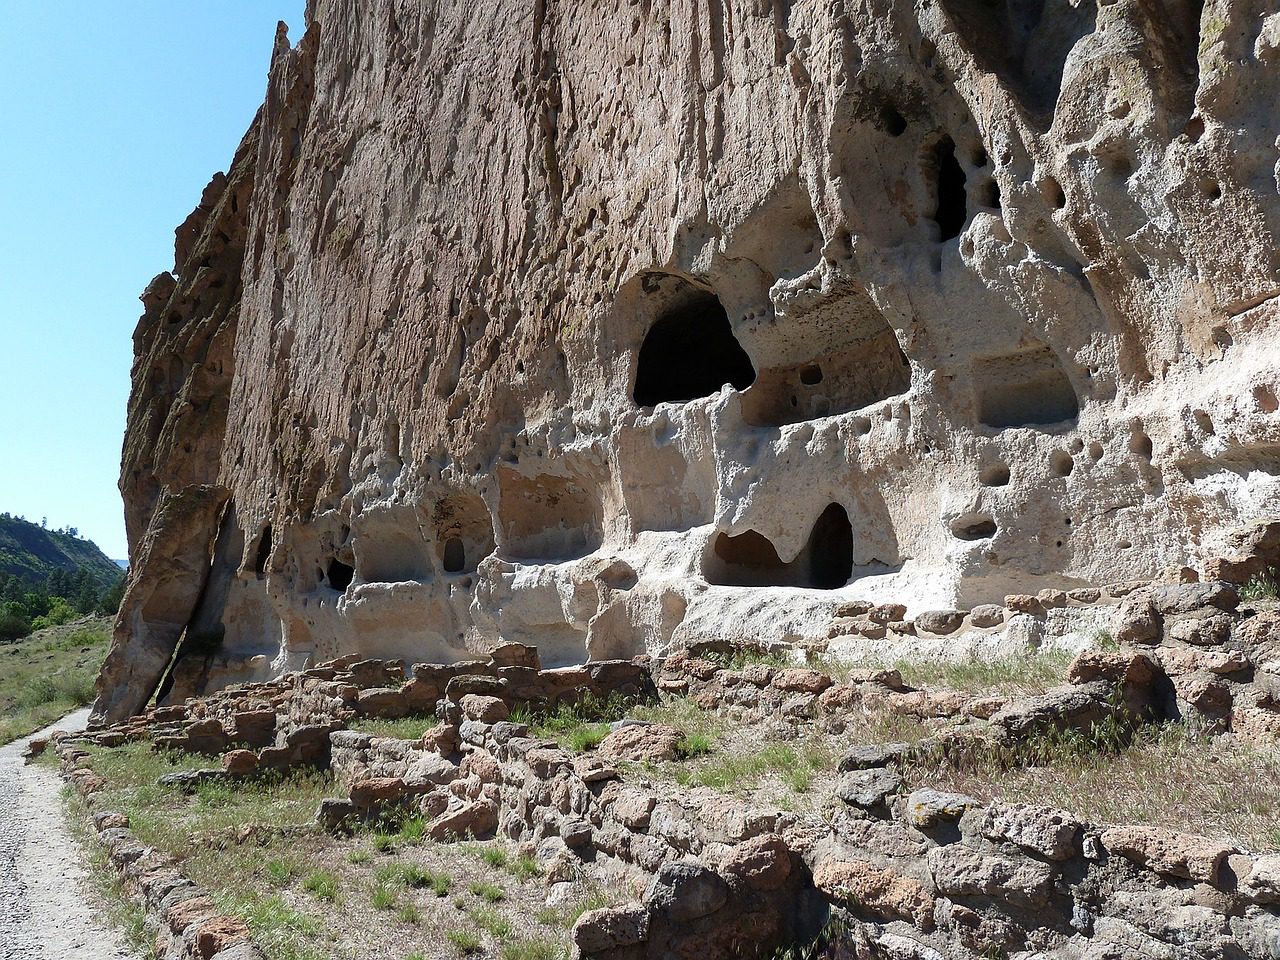 Historic Indian pueblos in New Mexico